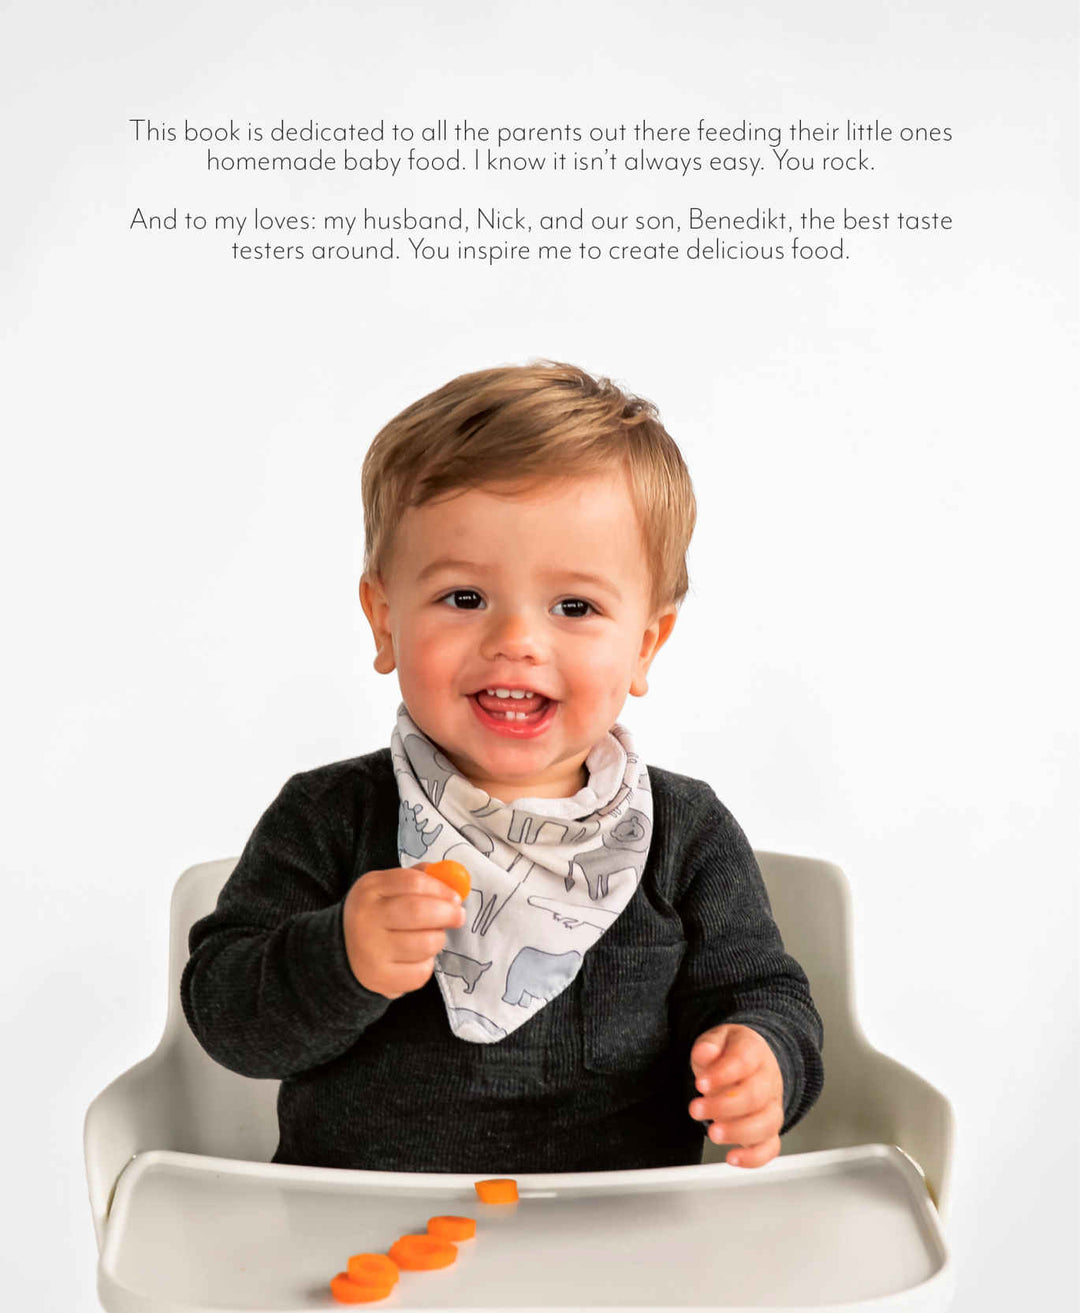 Baby Food Maker Cookbook